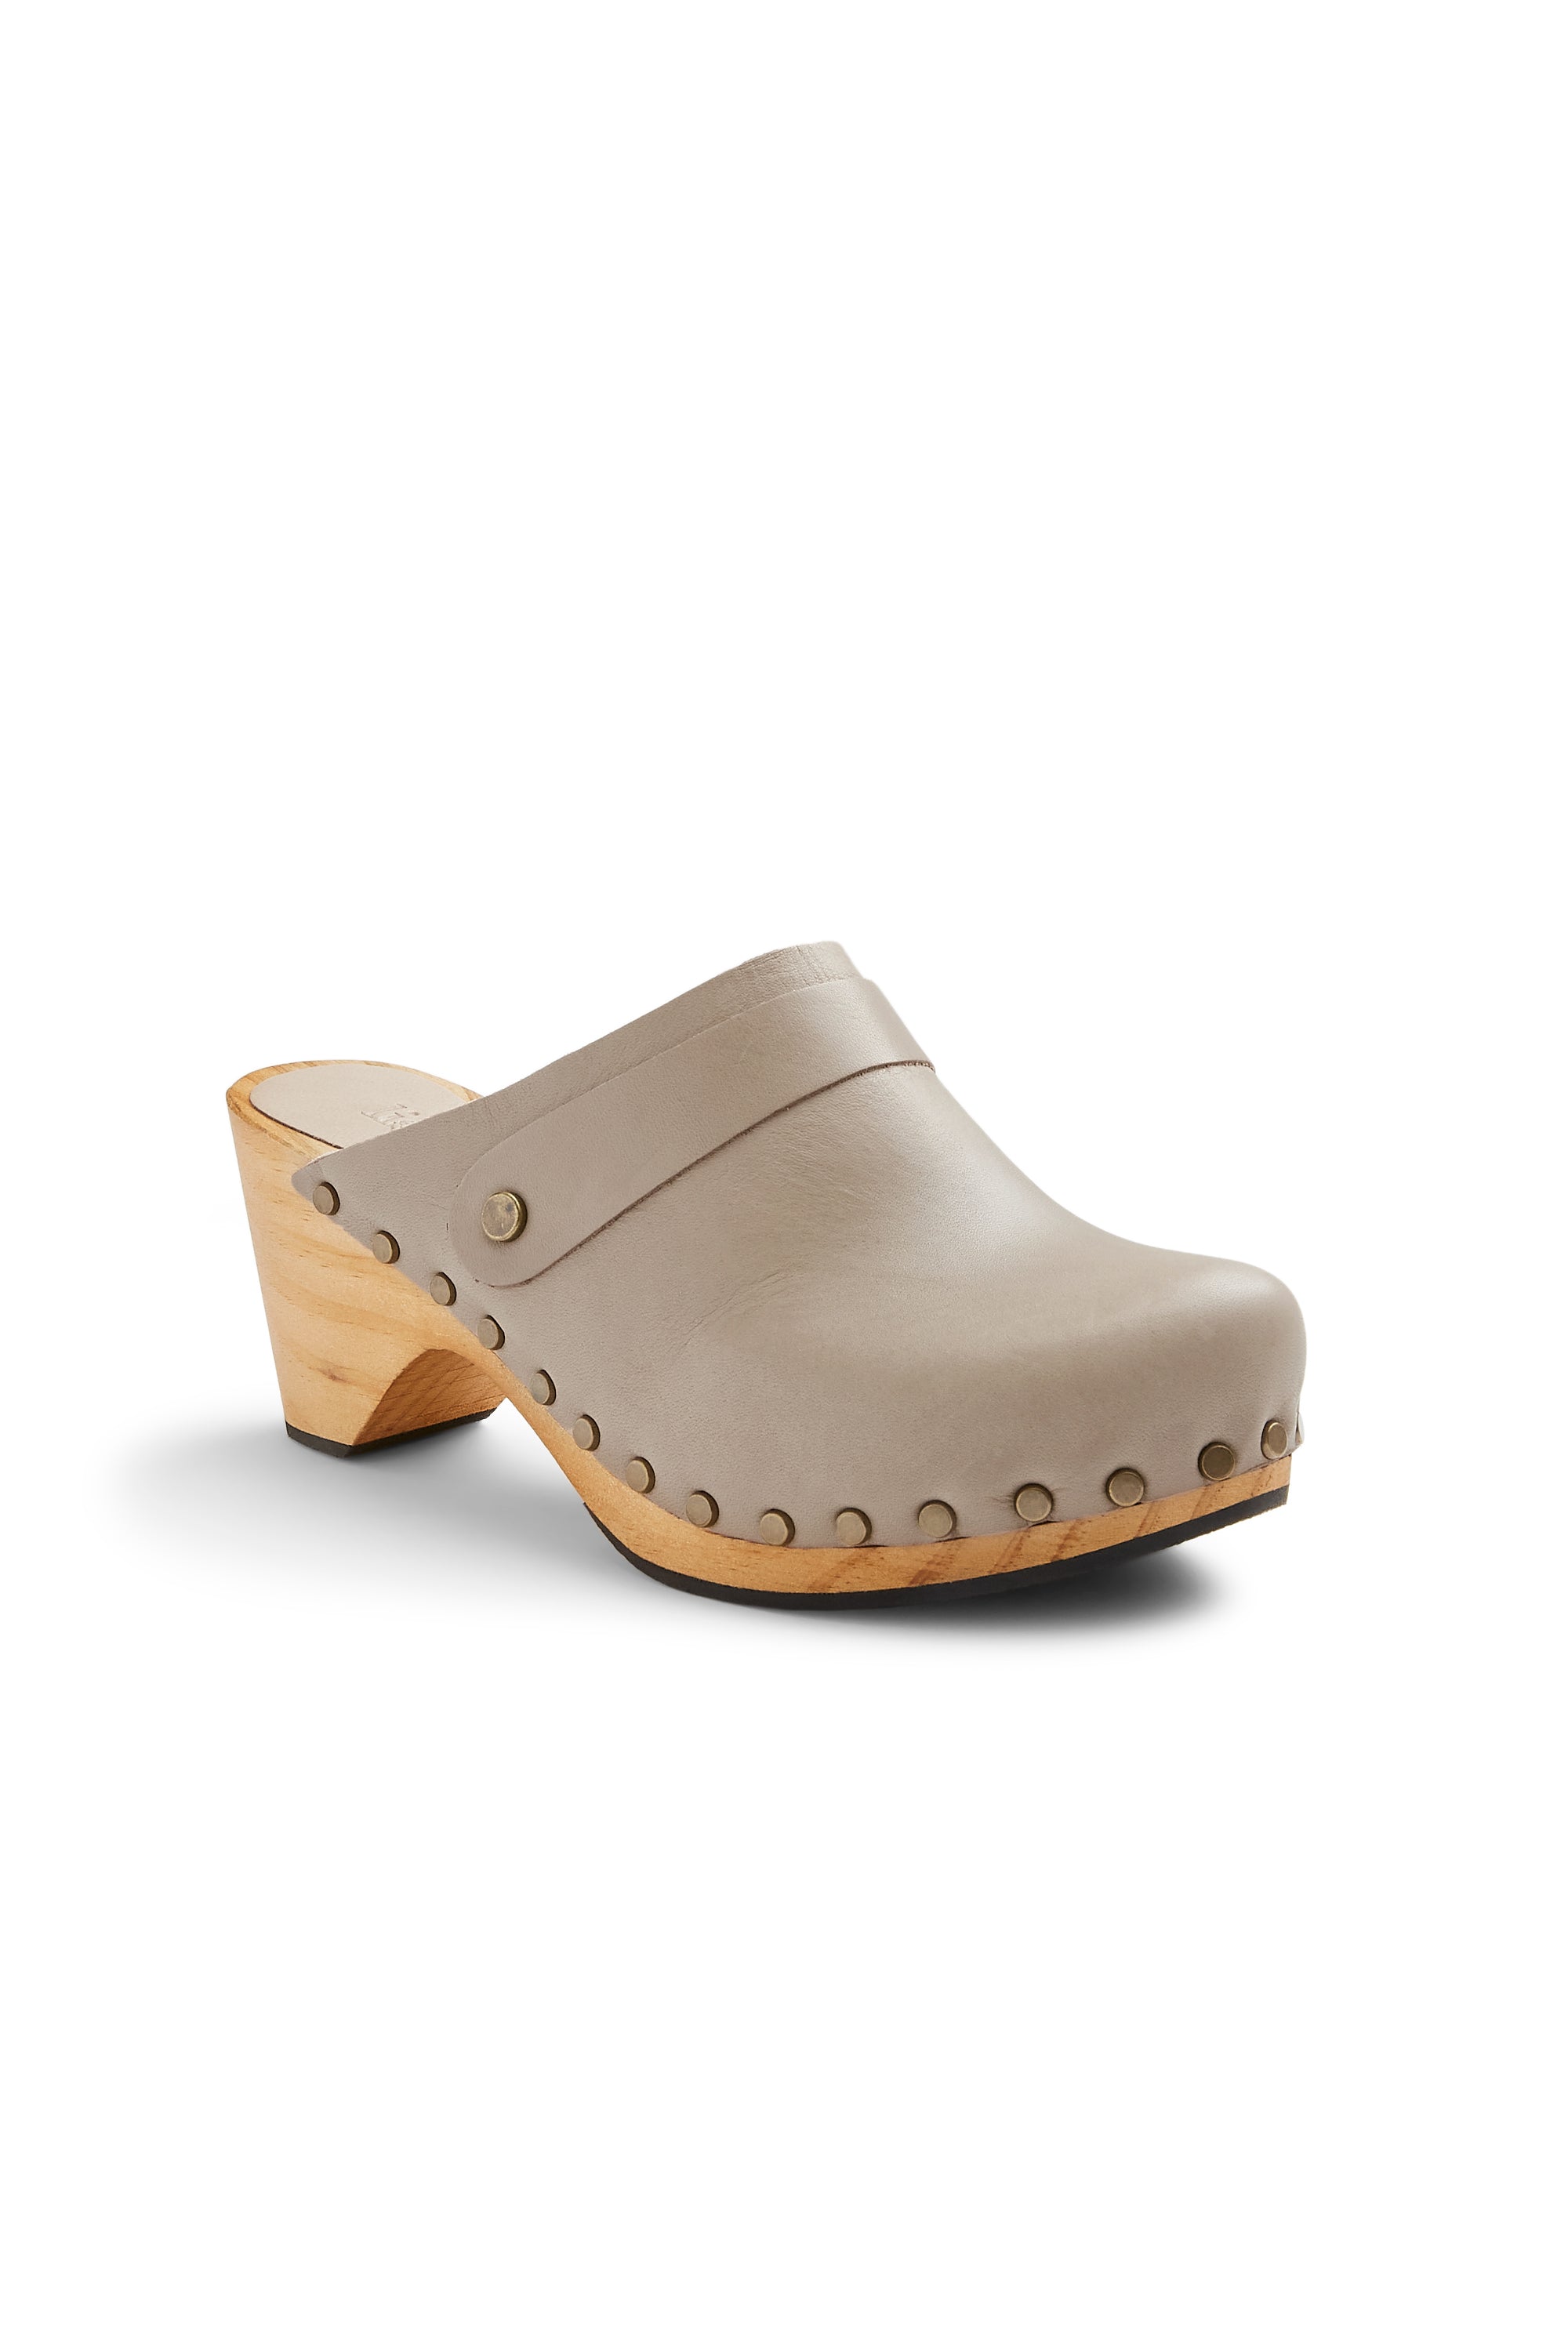 classic high heel clog in ecru leather